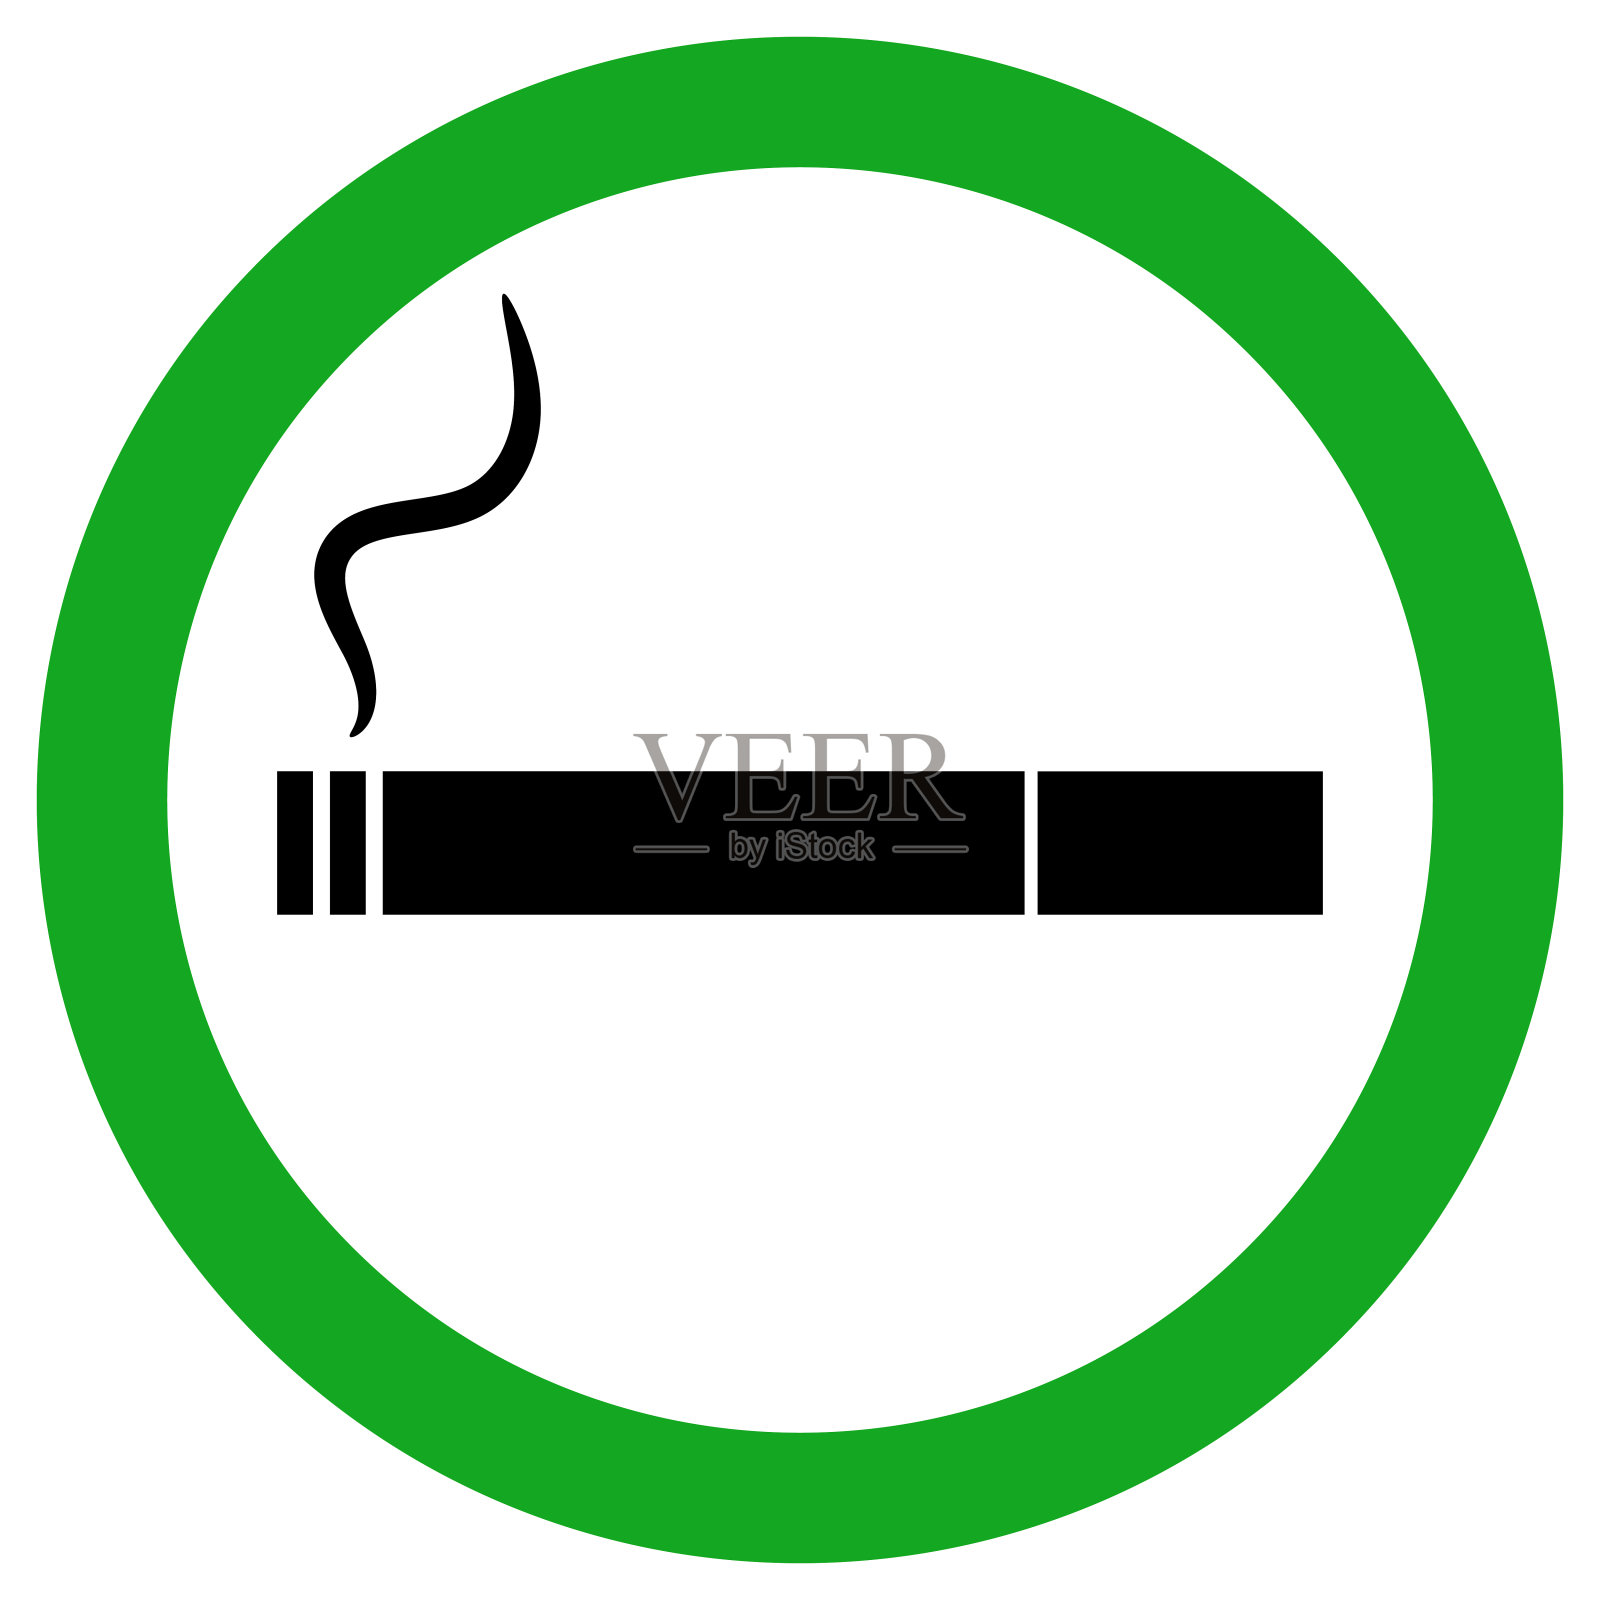 吸烟区的迹象。绿色圆圈内的香烟烟雾图标。向量图标素材